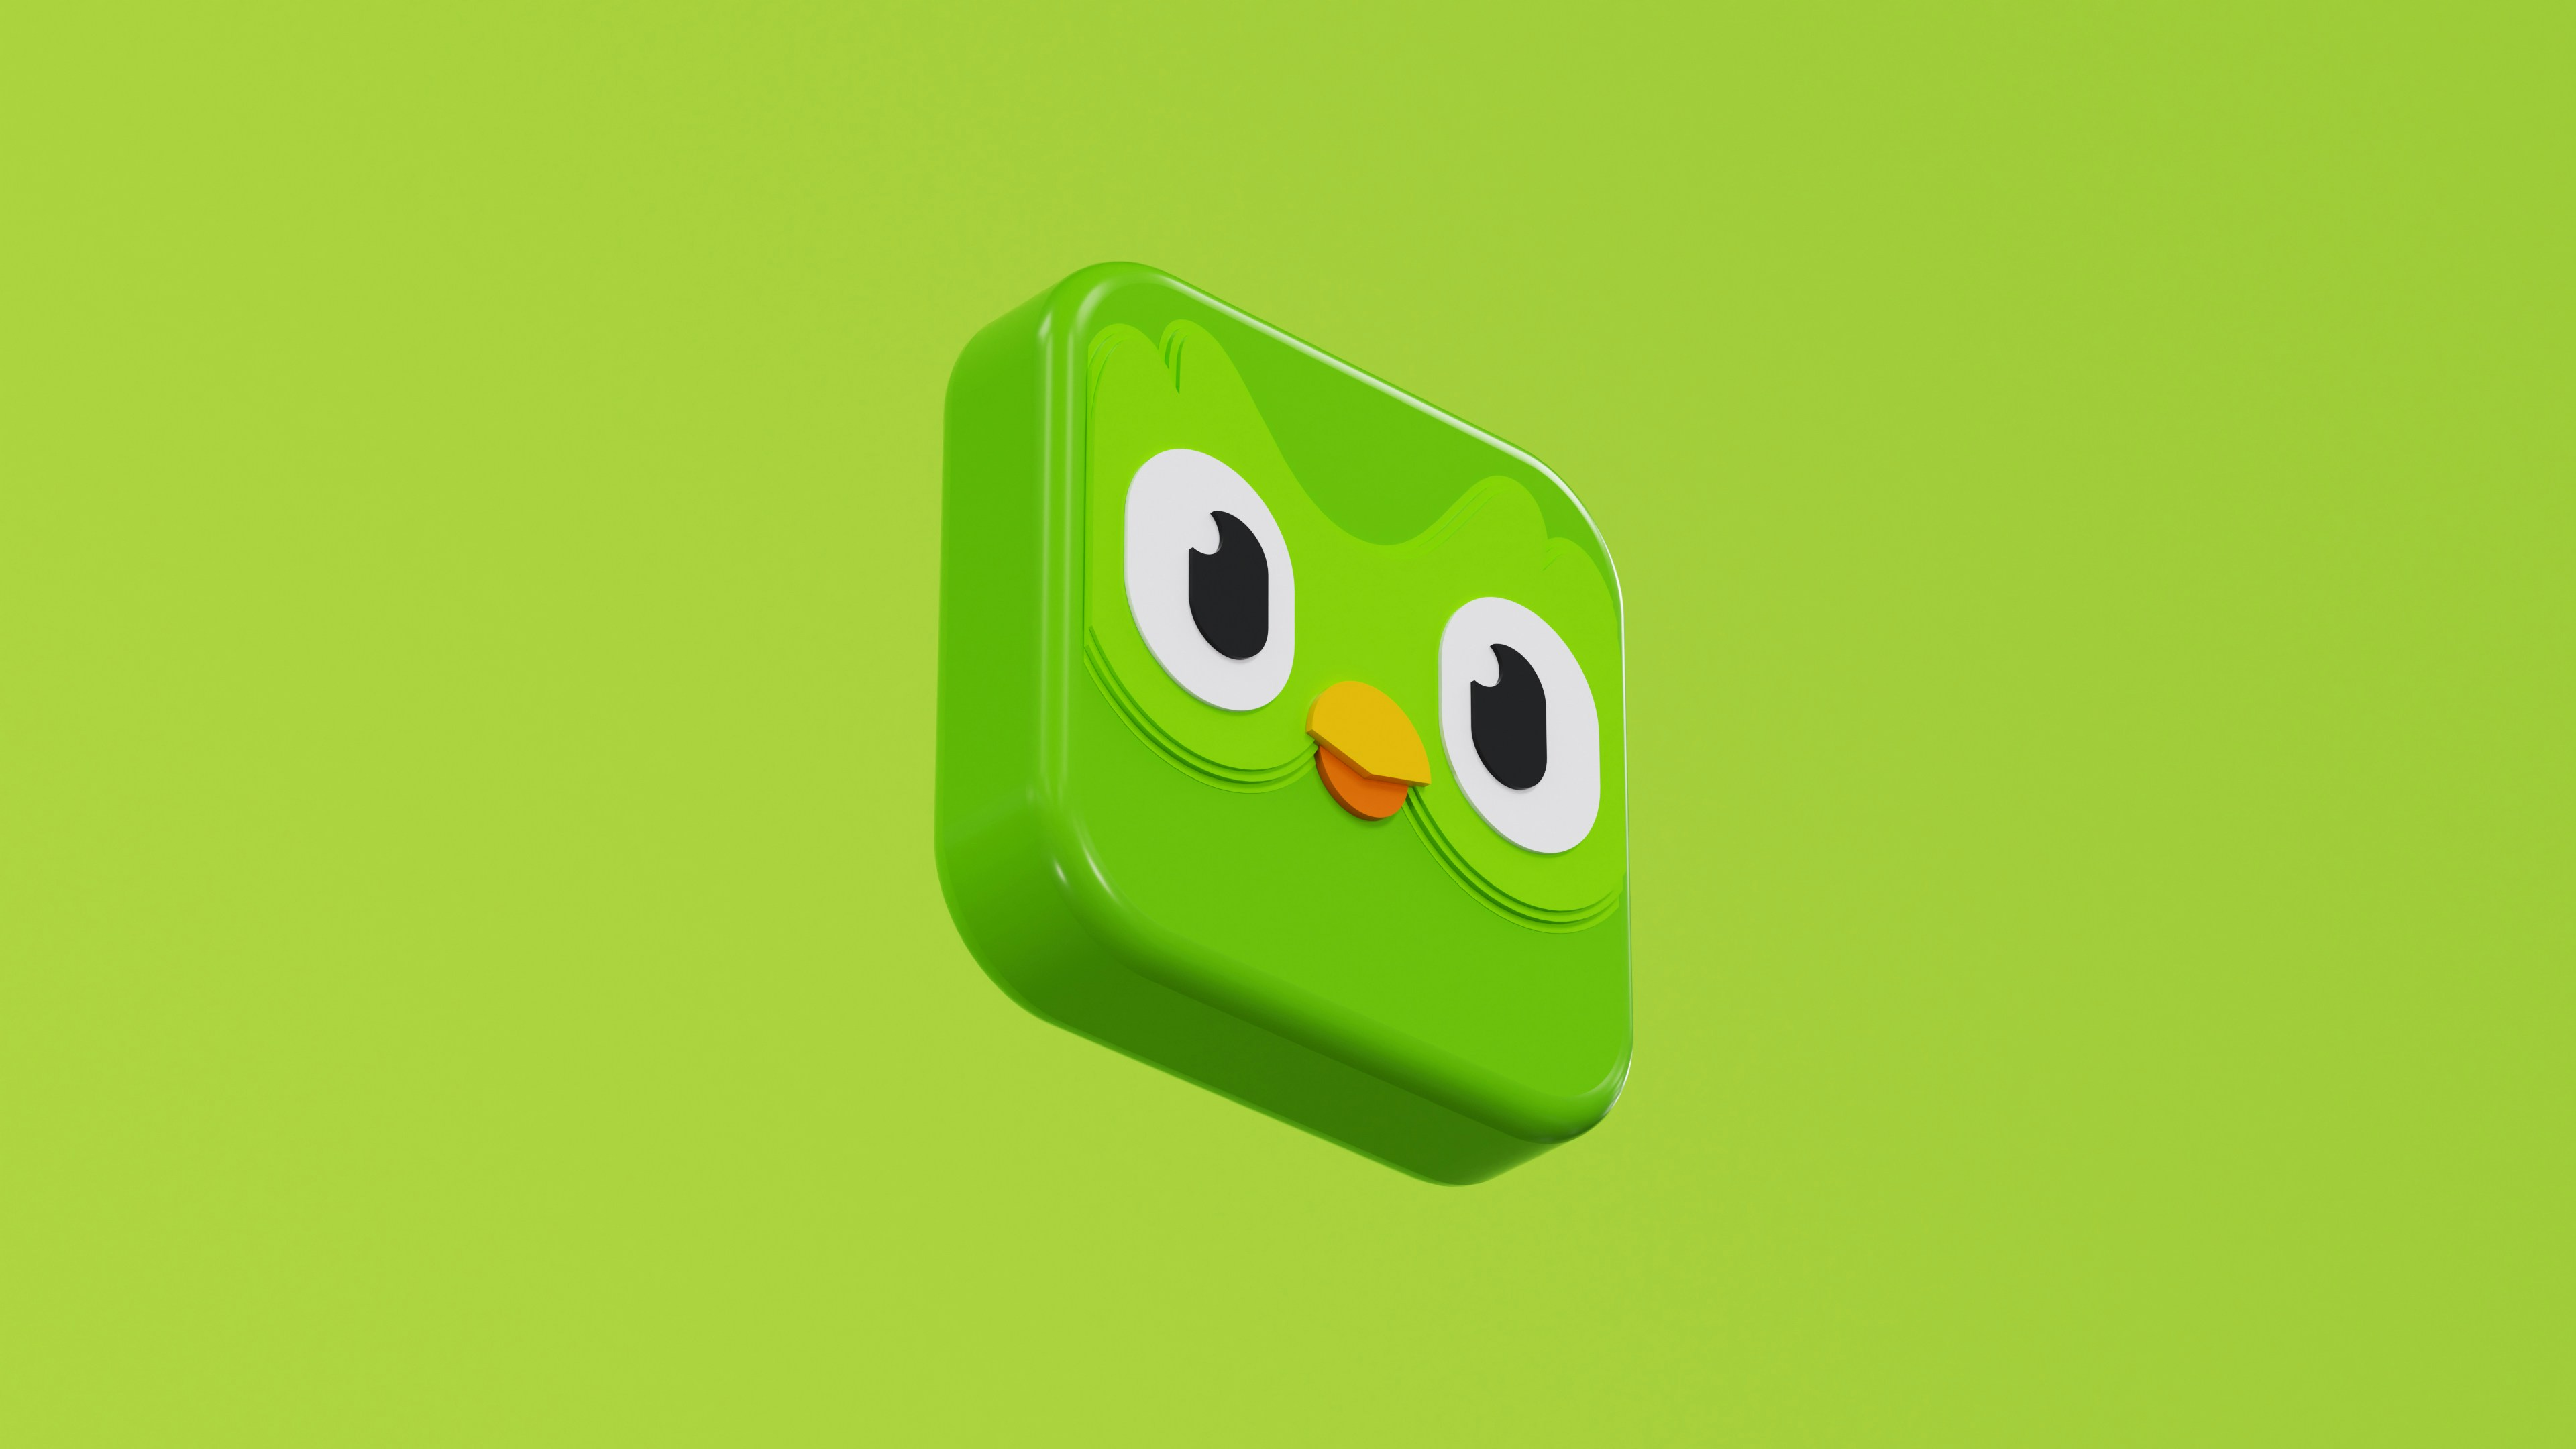 Duolingo logo with a green owl